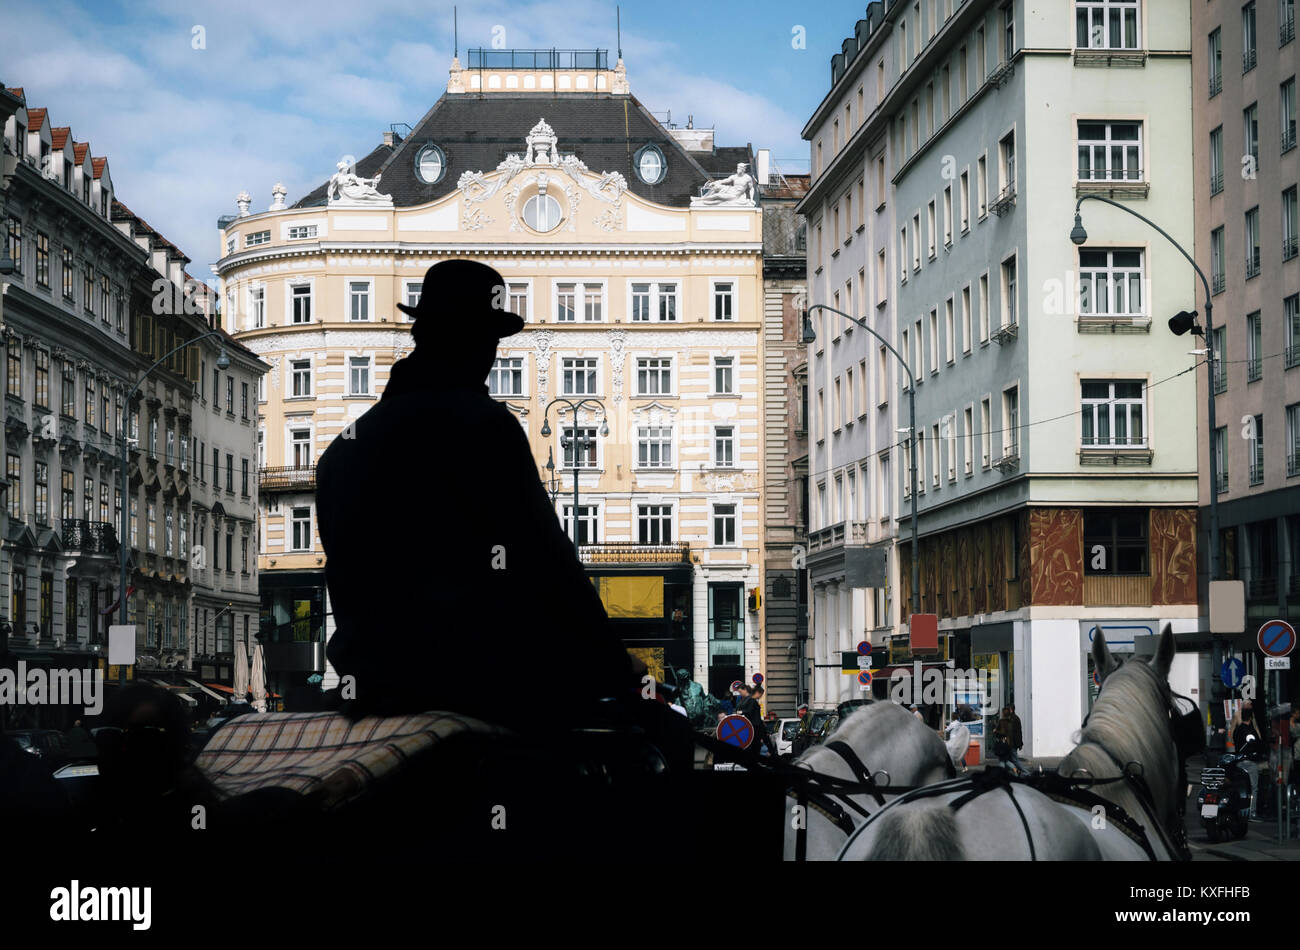 In carrozza fiaker con silhouette di coachman come guida turistica a piedi lungo le antiche strade di Vienna, Austria Foto Stock